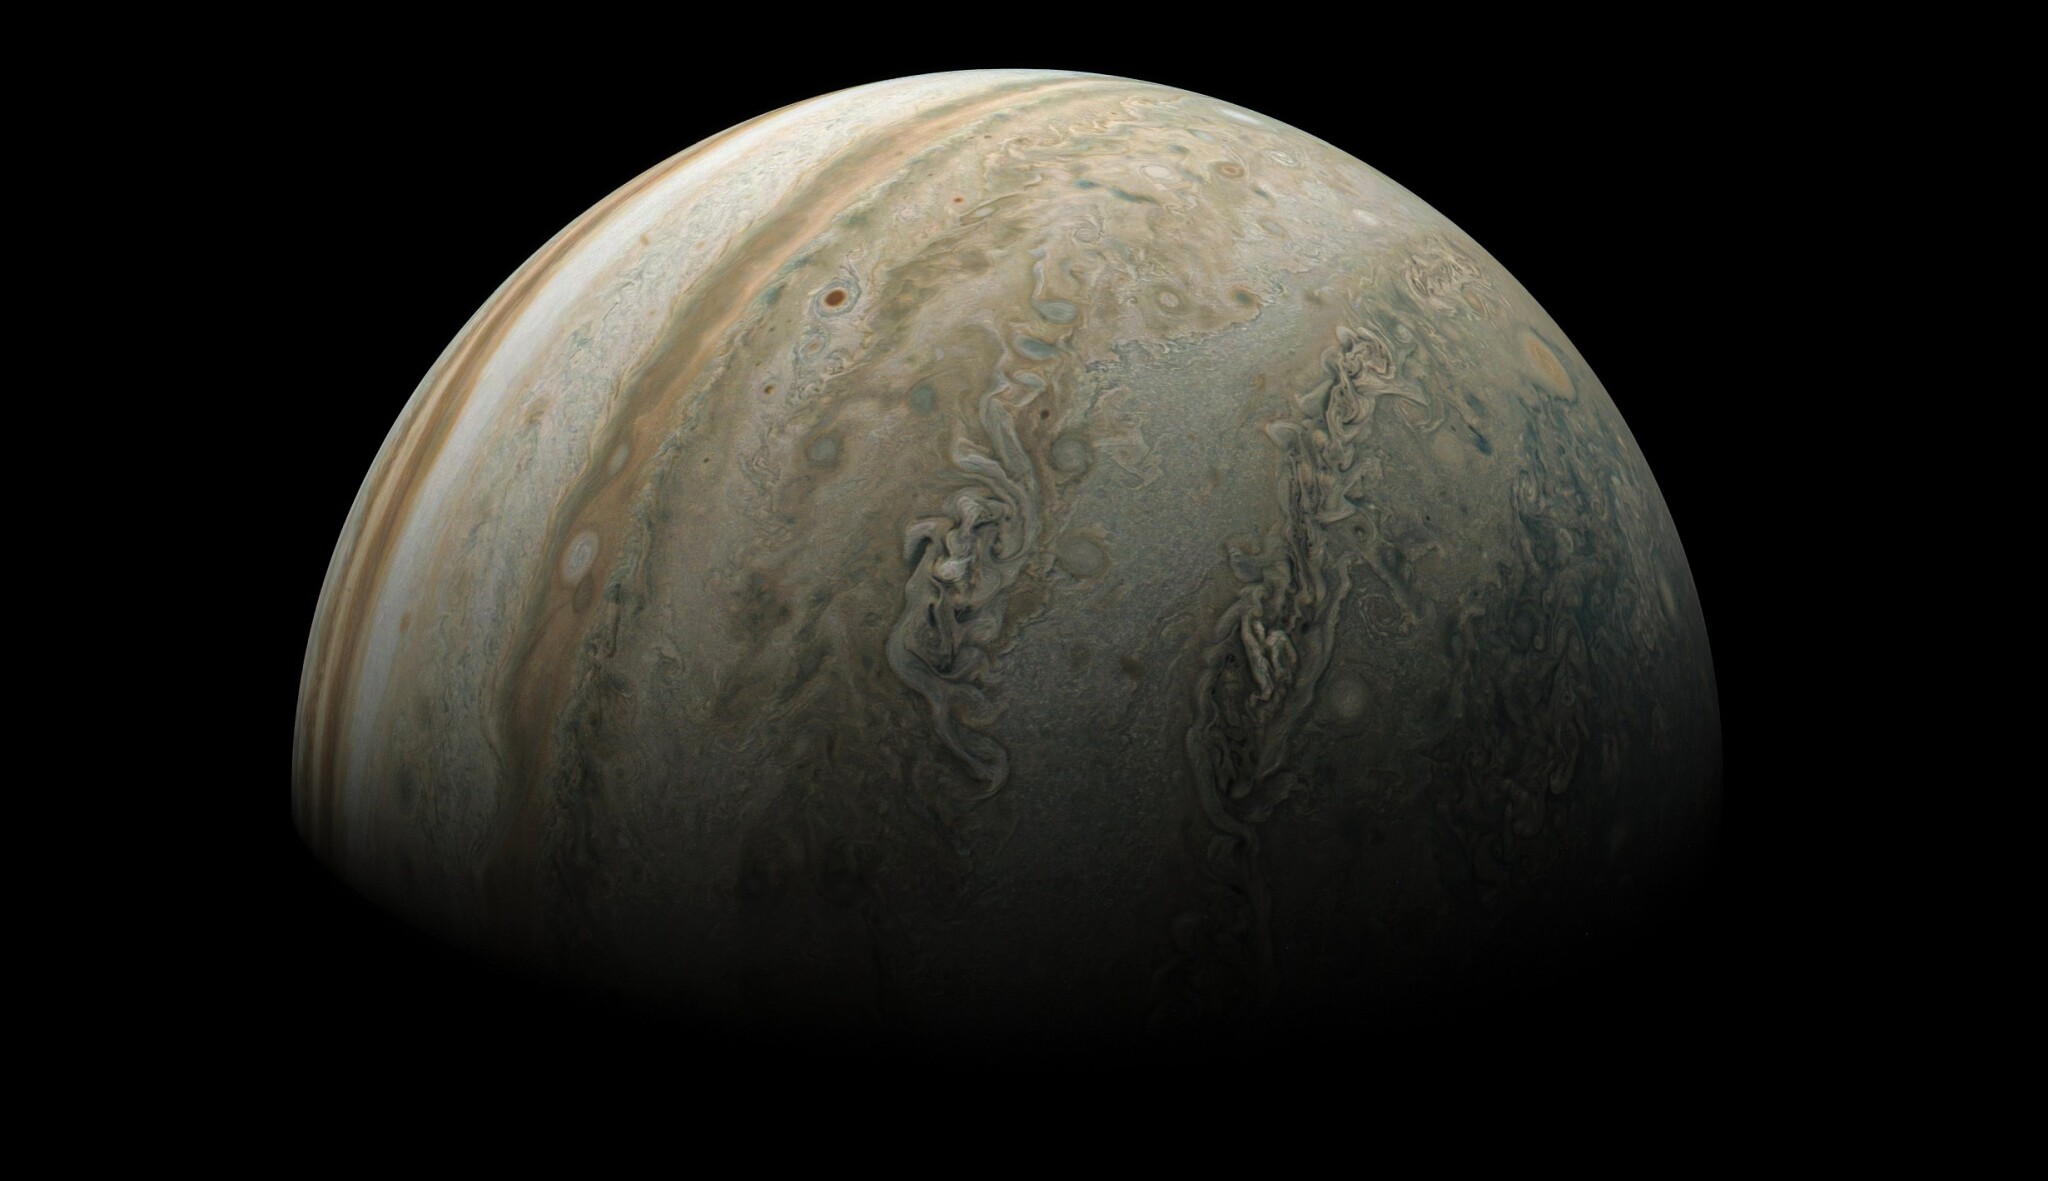 Čerstvé snímky Jupitera berou dech. Prohlédněte si krále planet zblízka